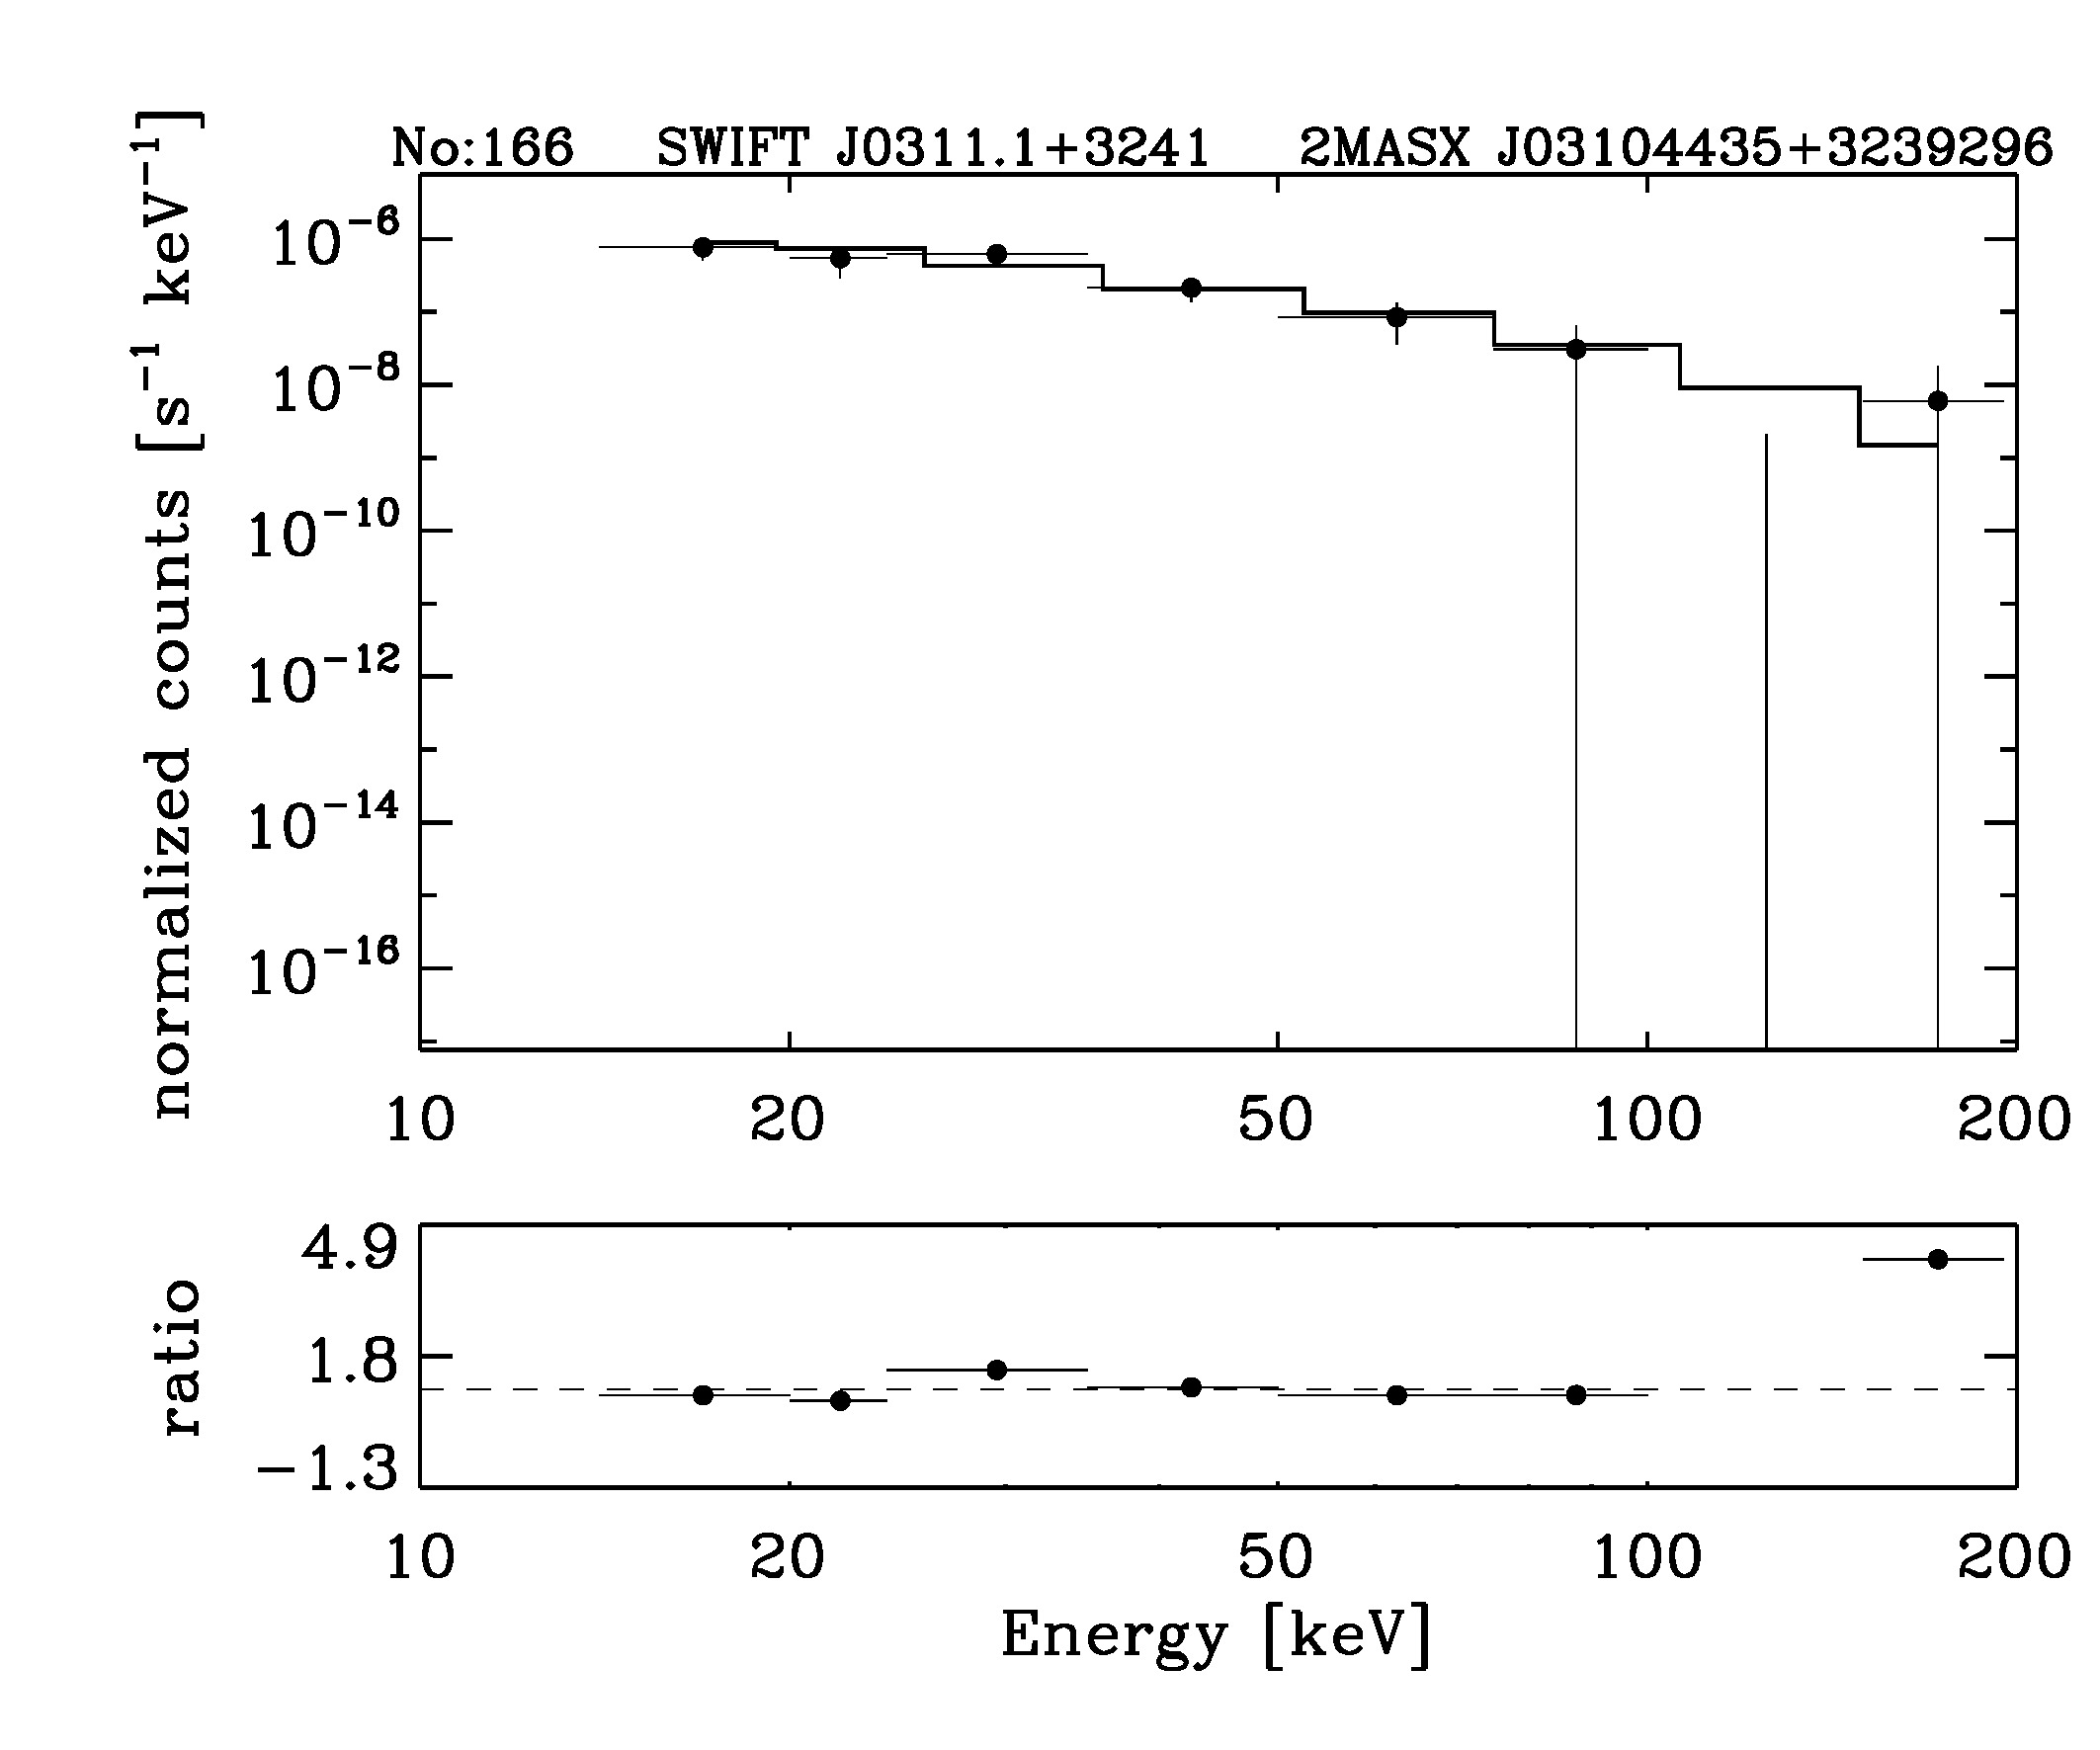 BAT Spectrum for SWIFT J0311.1+3241